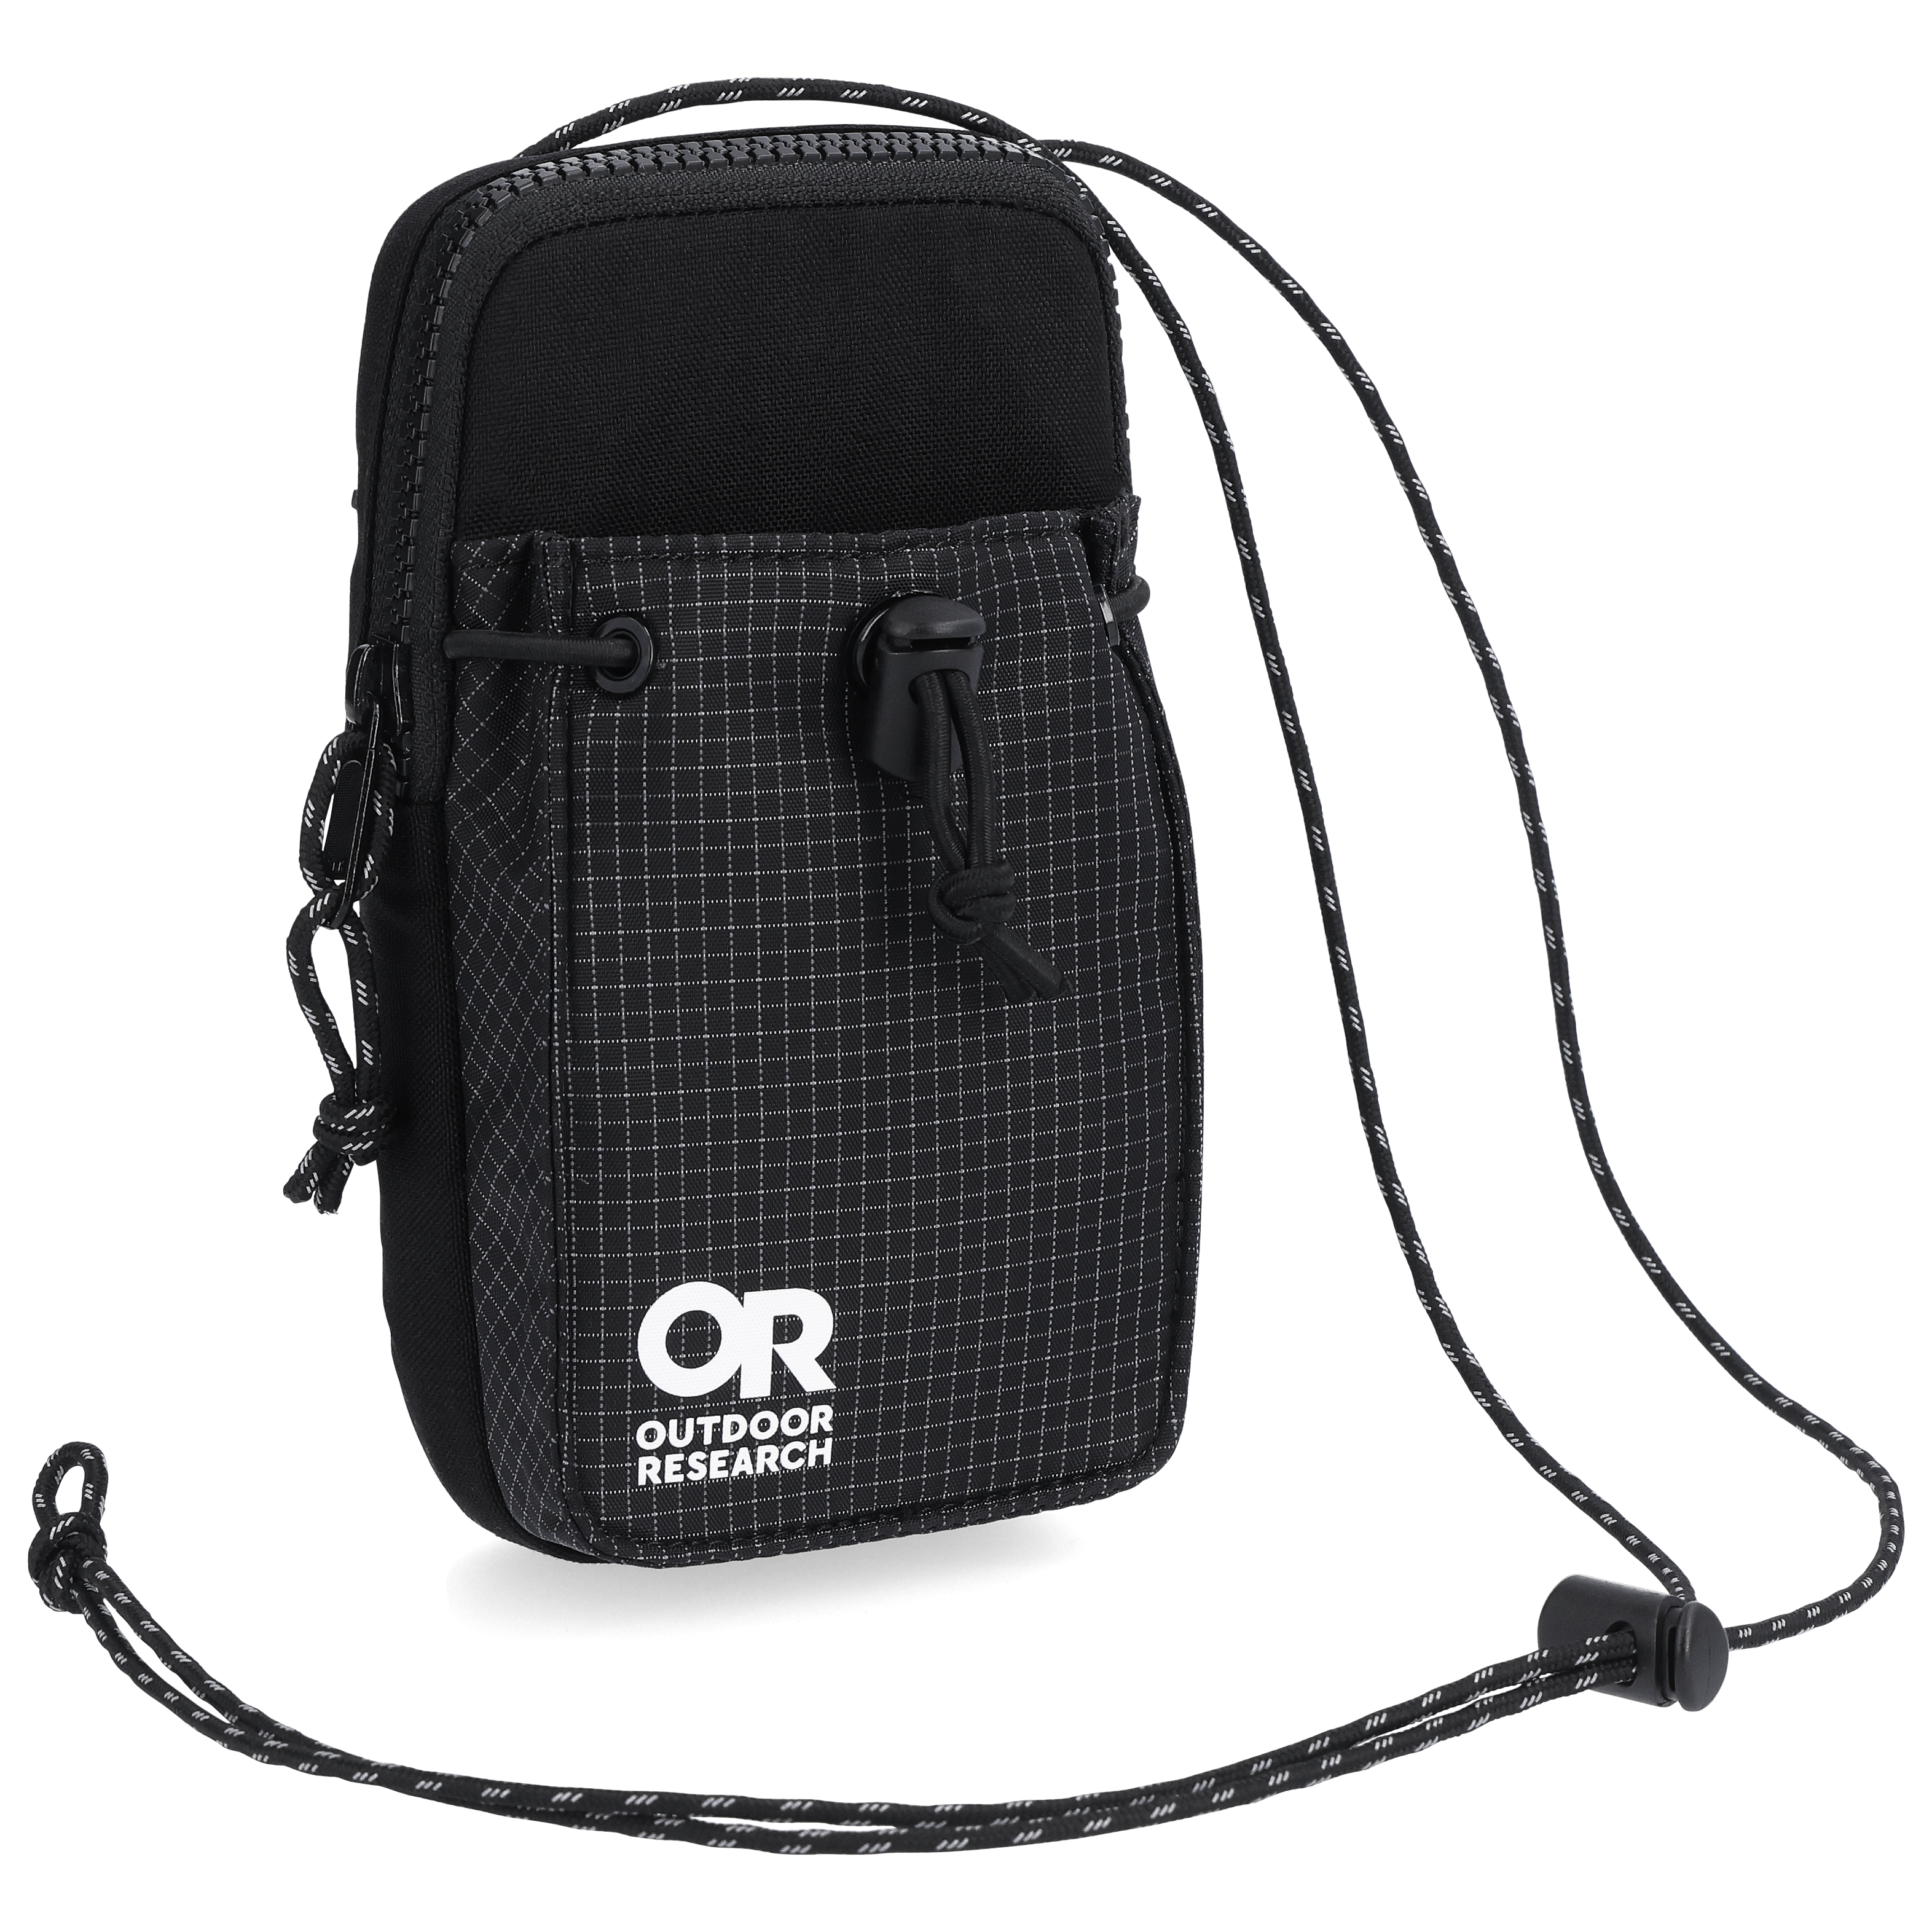 Casual Fashion Black Crossbody Bag, Versatile Solid Color Outdoor